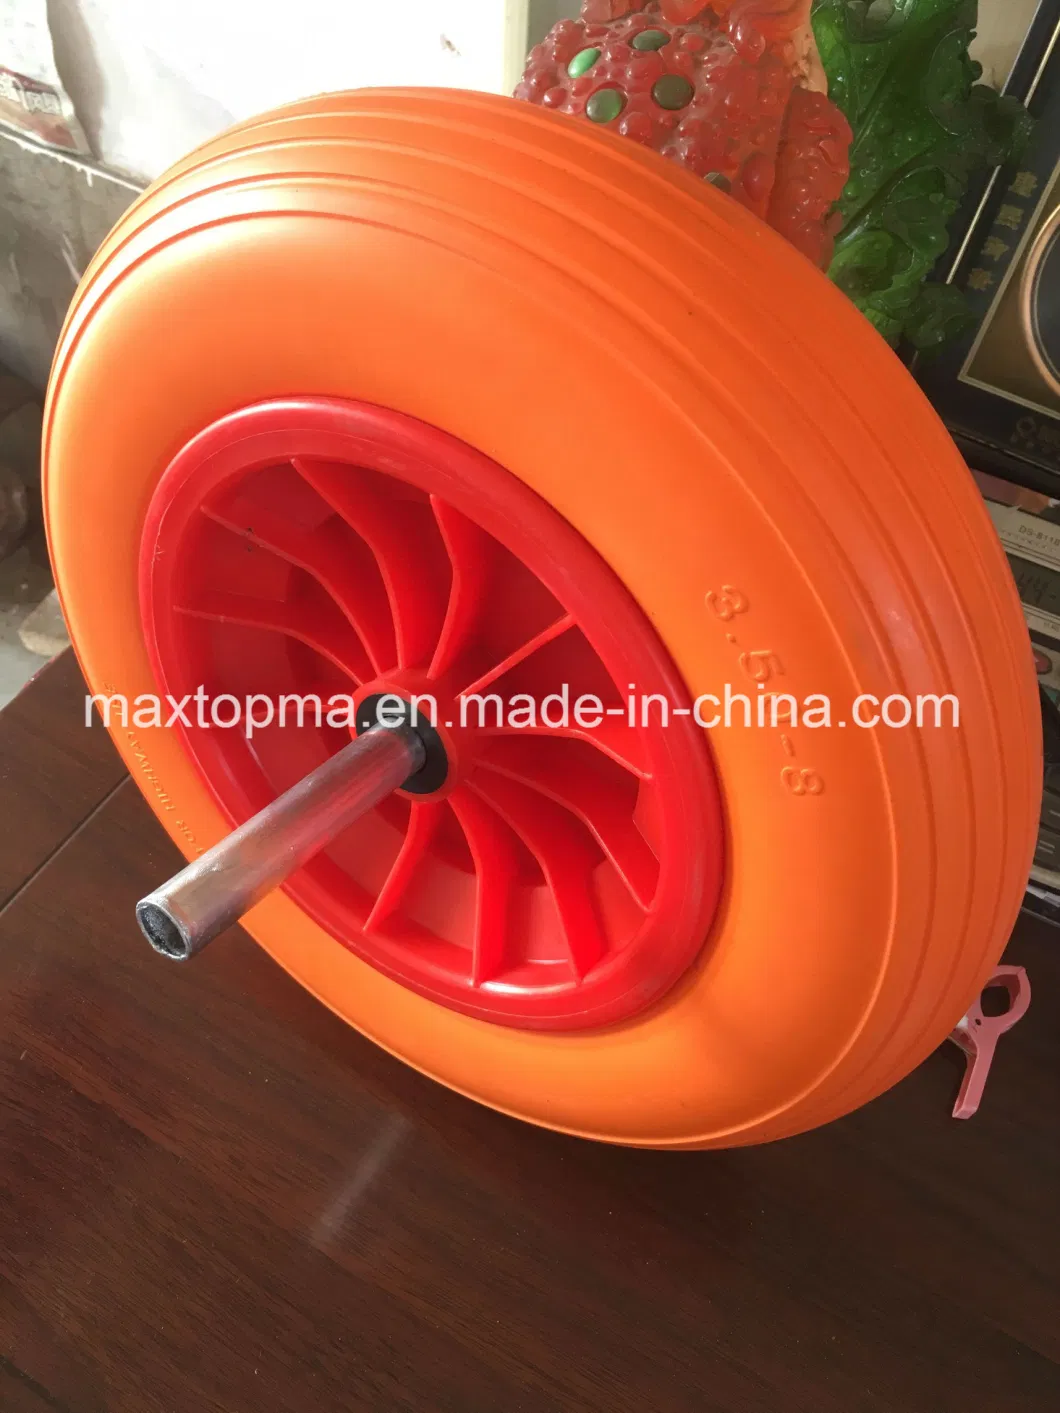 Maxtop Polyurethane PU Foam Flat Free 4.10/3.50-4 Trolley Wheels